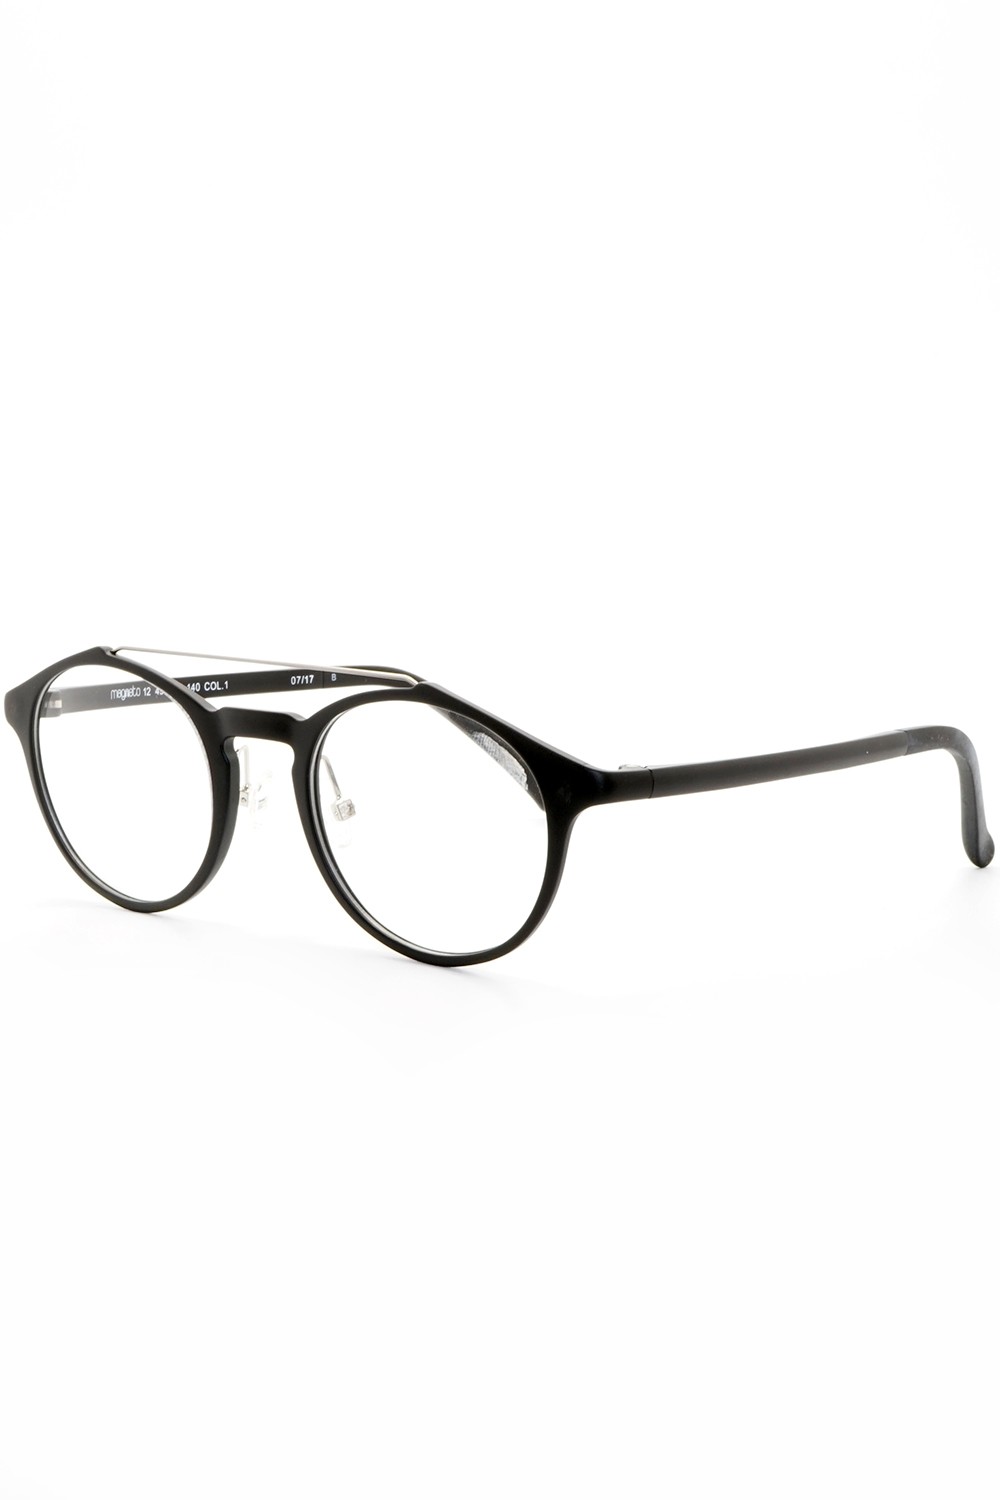 TF Occhiali - Occhiali da vista in plastica con clip solare tondi unisex nero